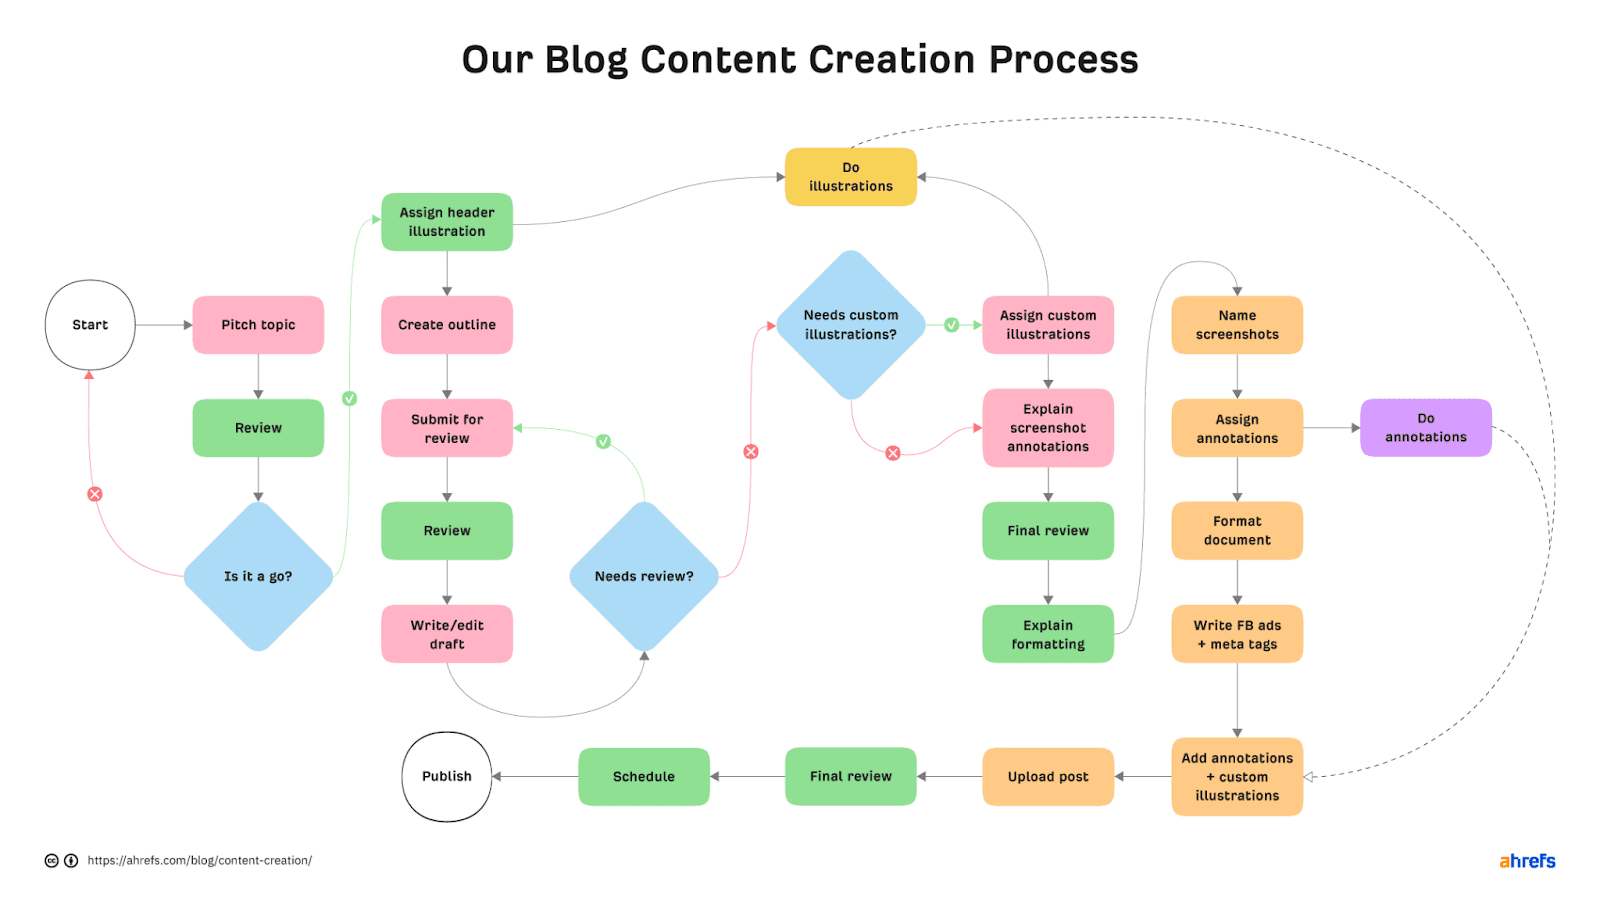 Fluxograma do processo de criação de conteúdo do blog da Ahrefs